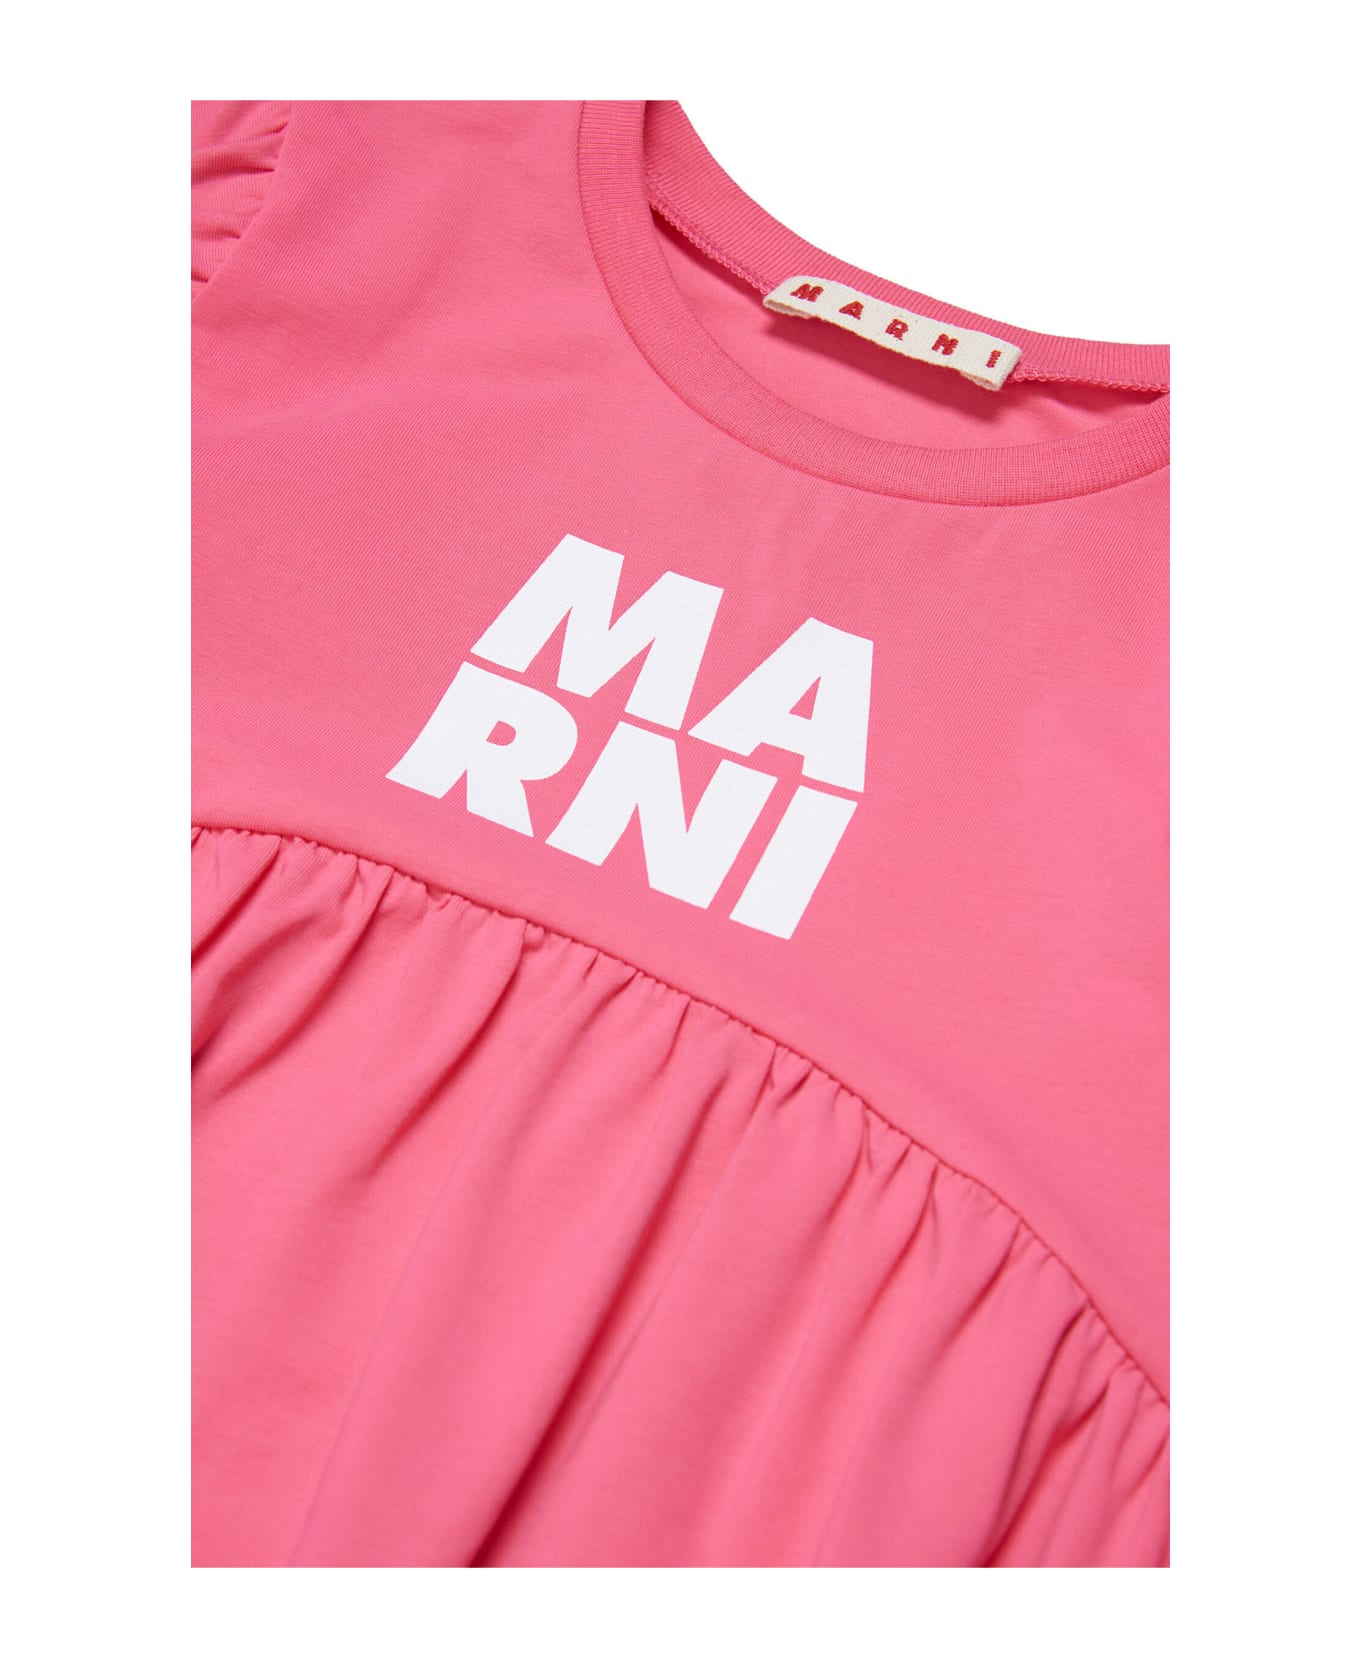 Marni Md215f Dress Marni Fuchsia Sleeveless Jersey Dress With Logo - Bright fuxya